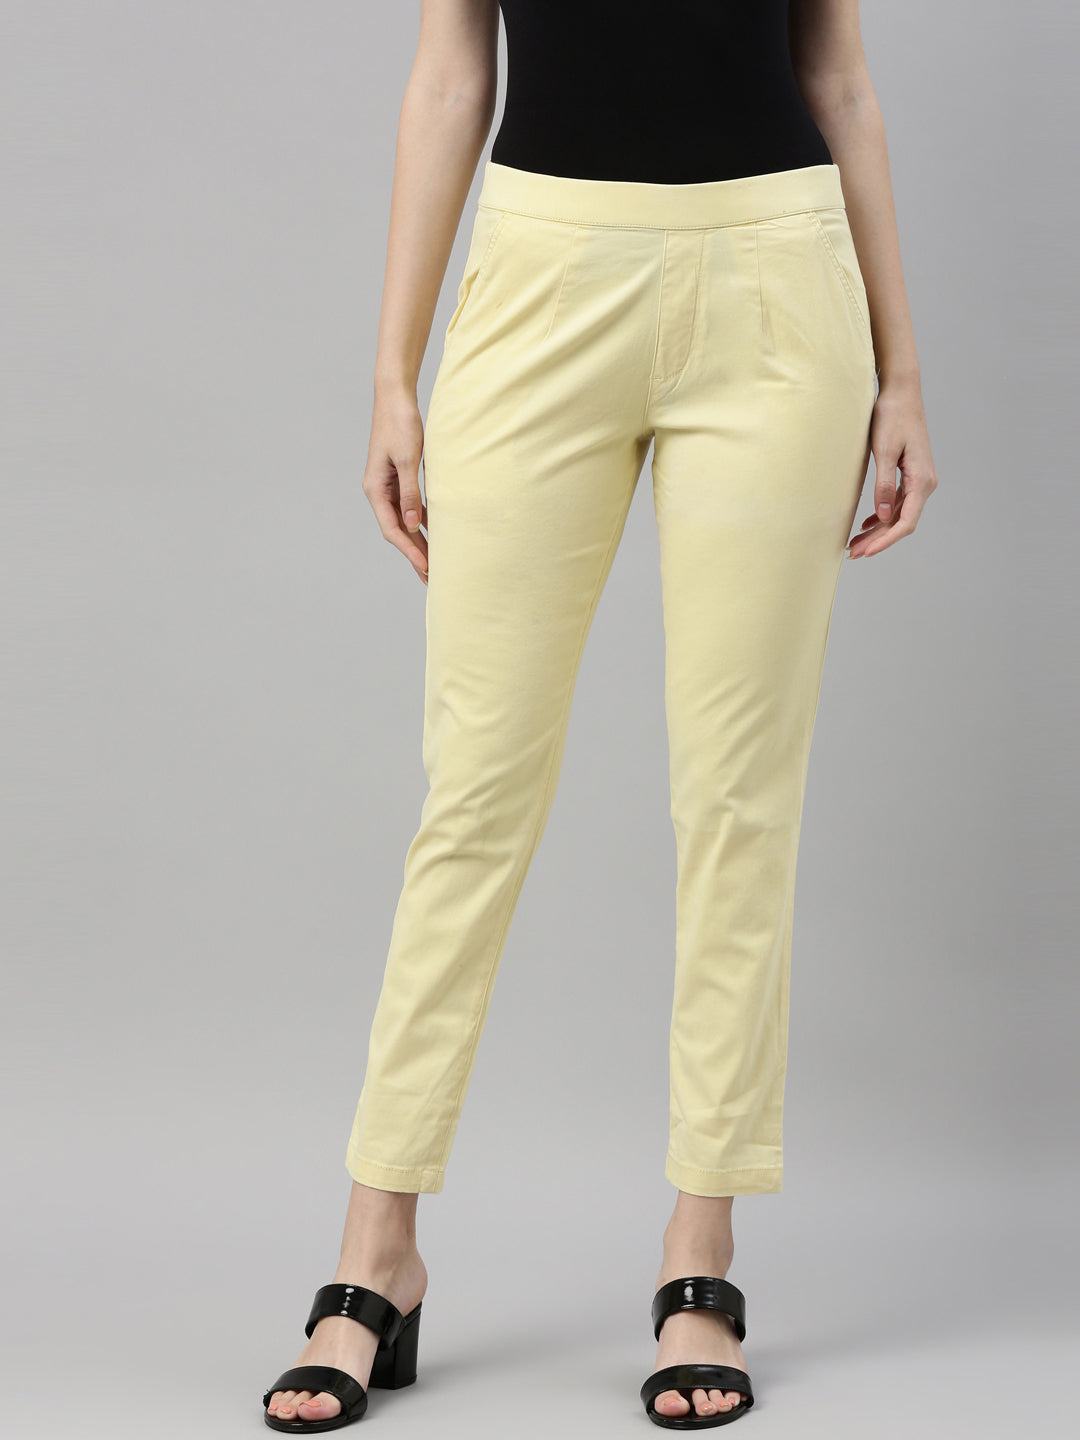 Cotton India Women's Twinkle Cotton Flex Pant Regular Fit (Combo Pack) –  Cotton Shope online